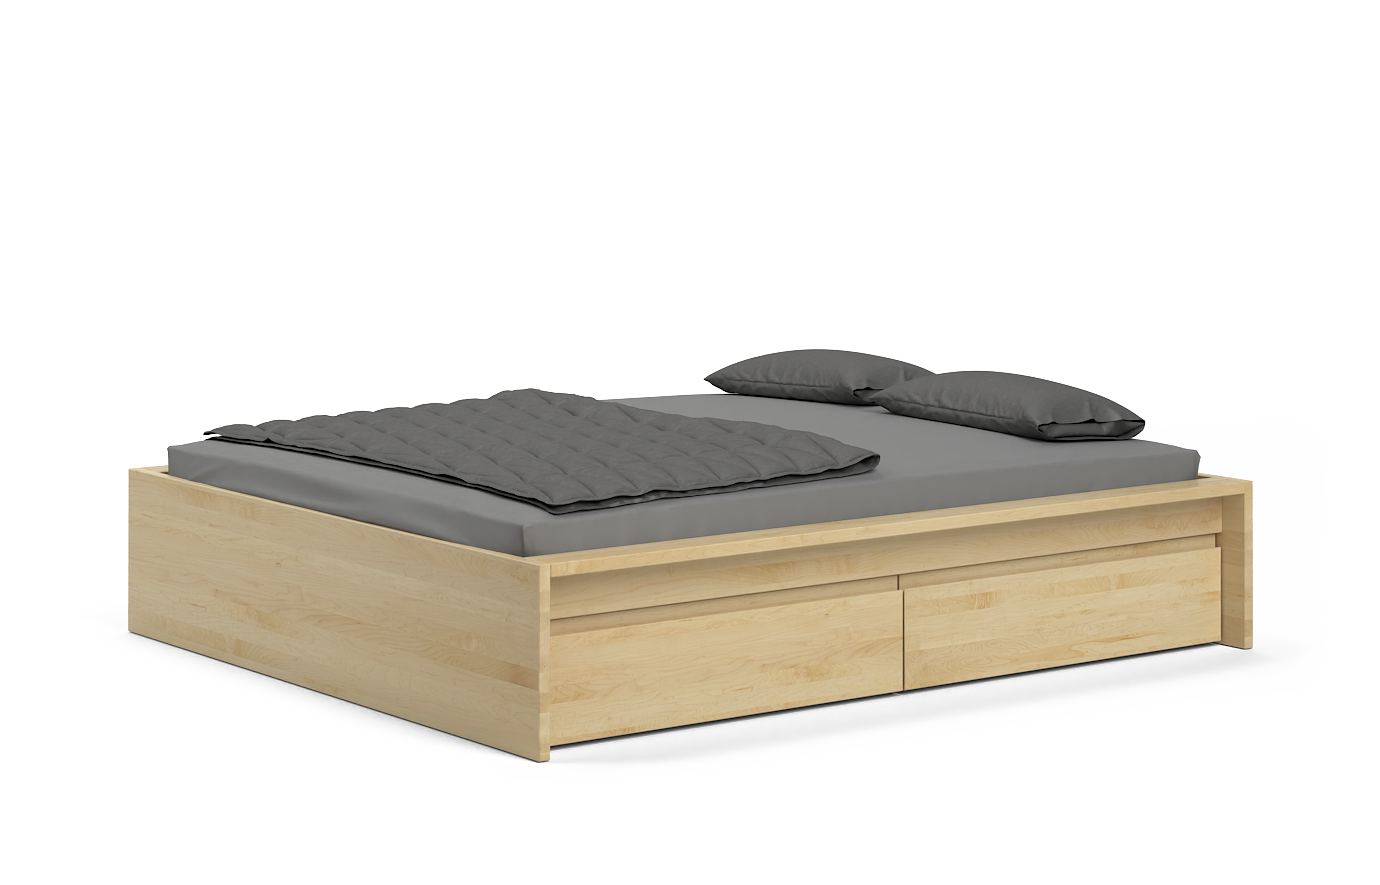 KOMHTOM Bett Truhe, 140 x 200 cm mit Kopfteil, gepolstertes Doppelbett mit  Stauraum unter Bett, Bettgestell, Lattenrost aus Holz (ohne Matratze)